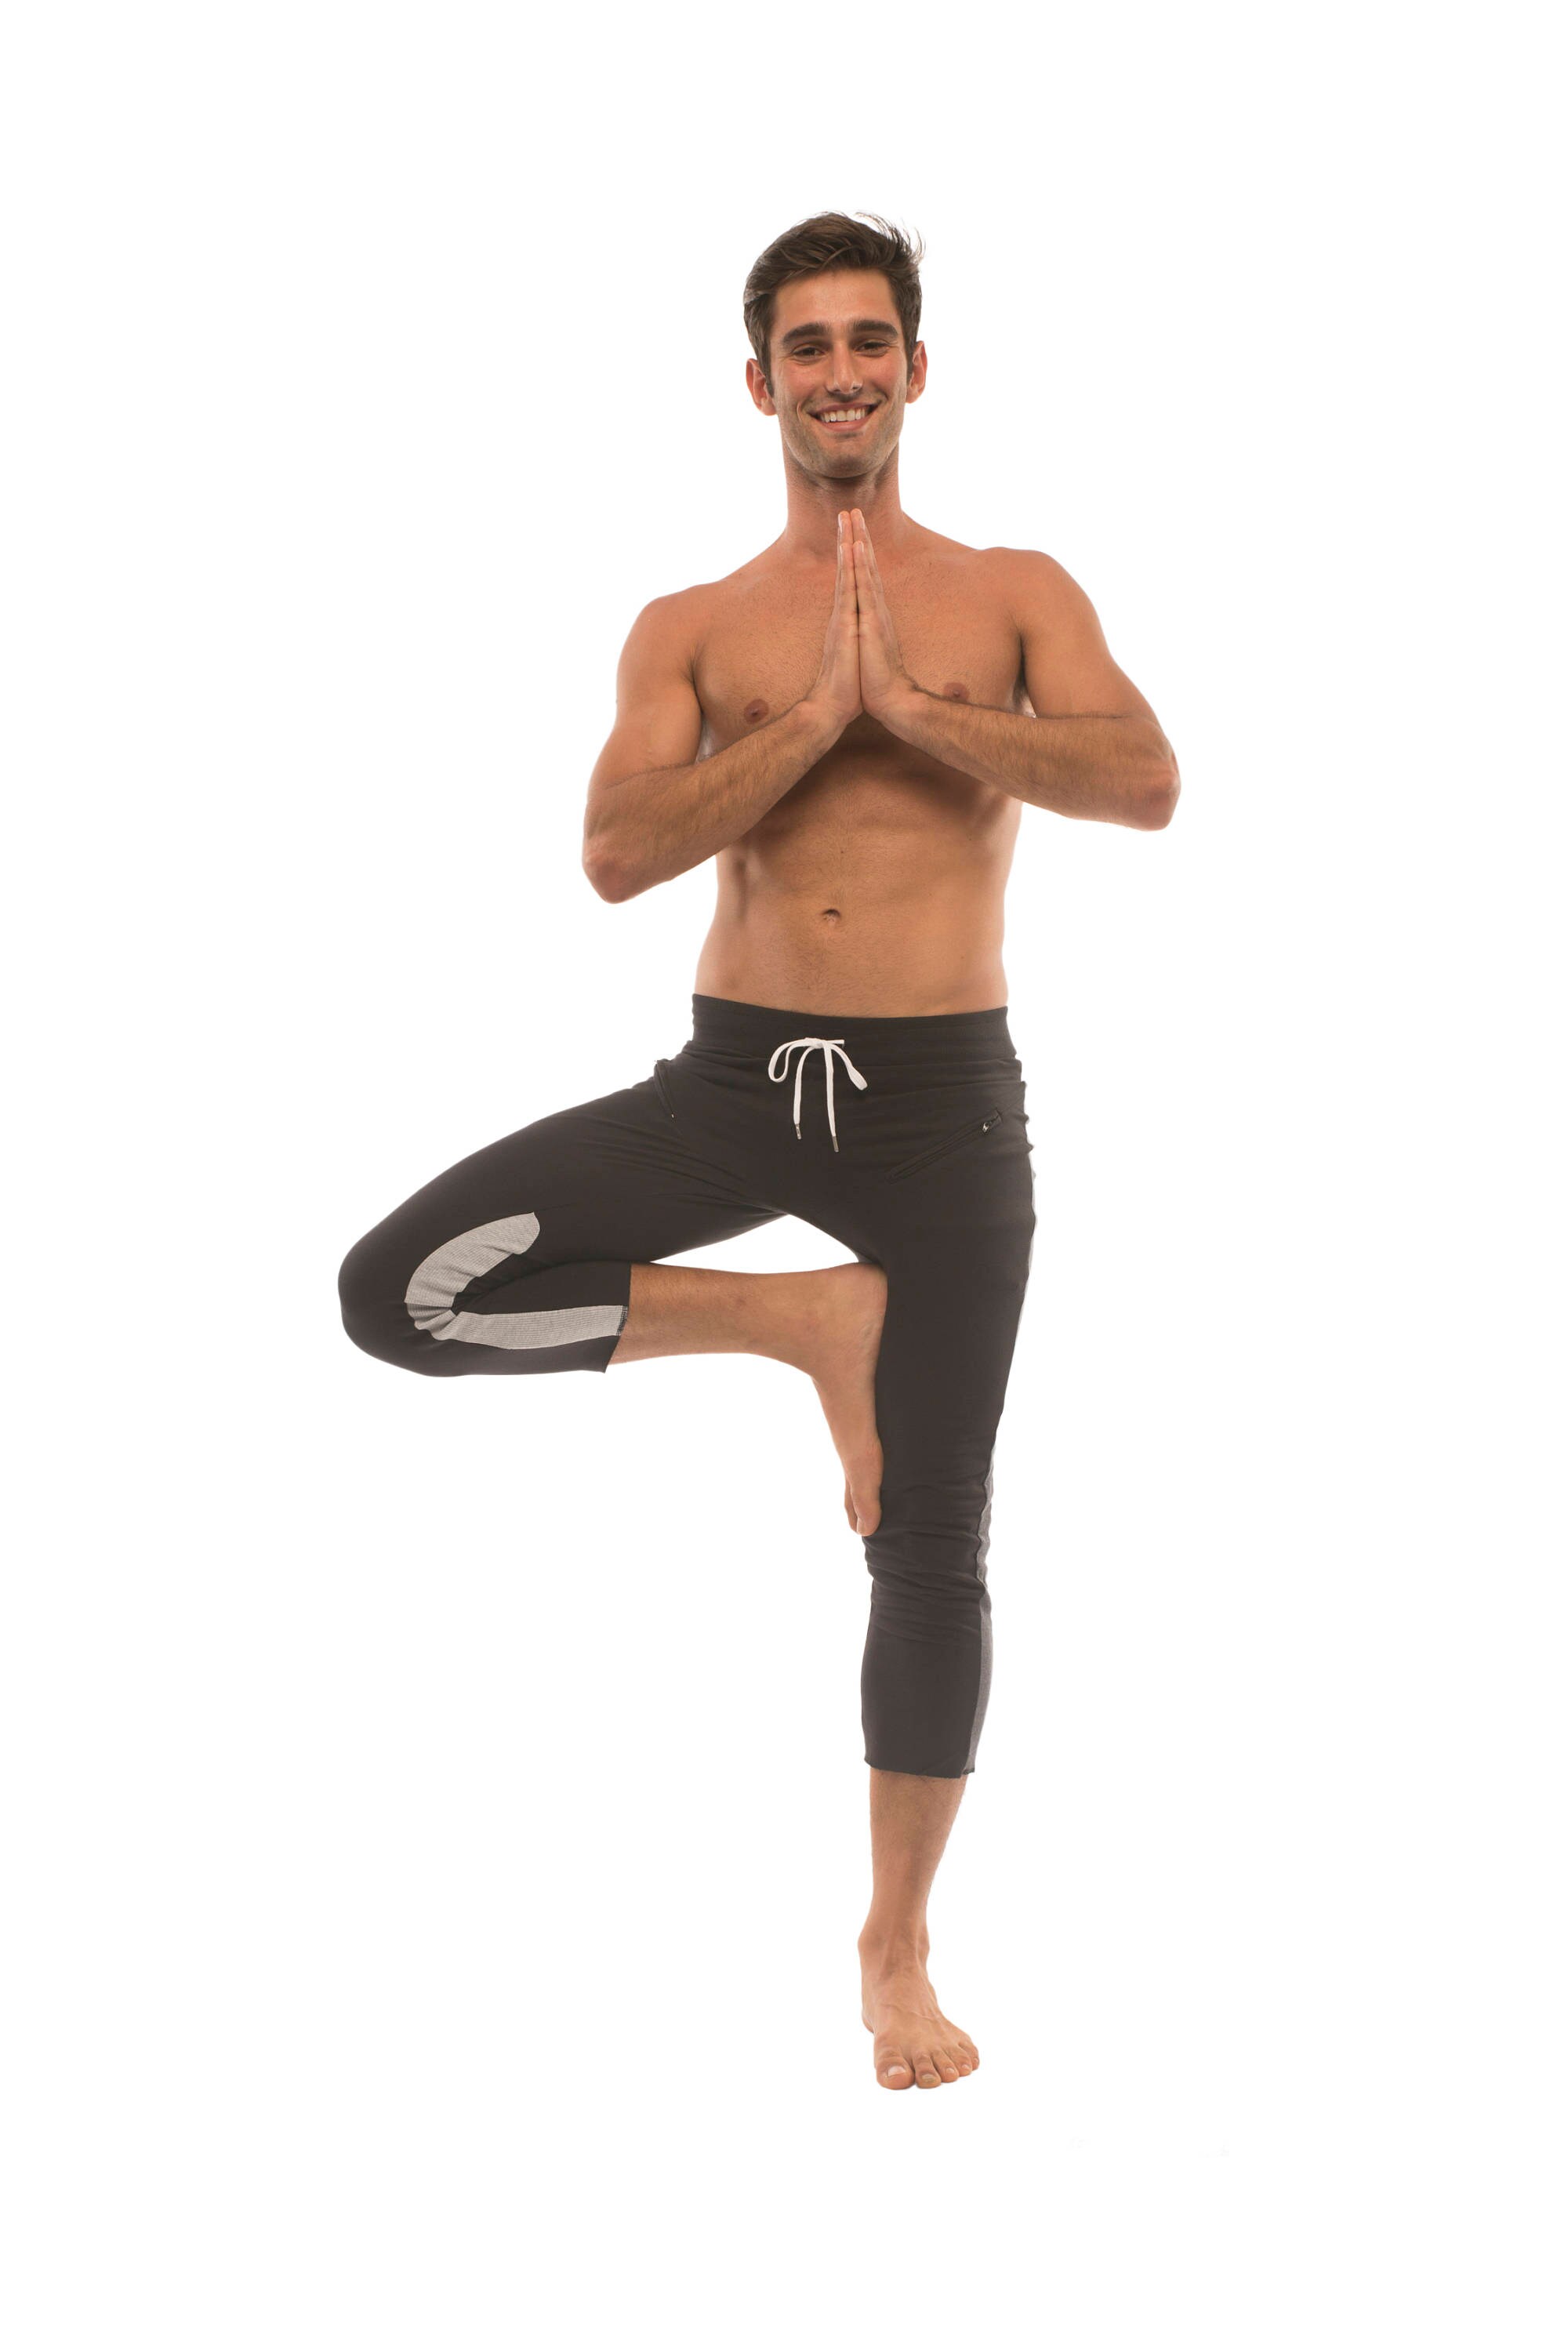 Sky Blue Yoga Leggings, Turquoise Yoga Shorts or Capri Yoga Pants